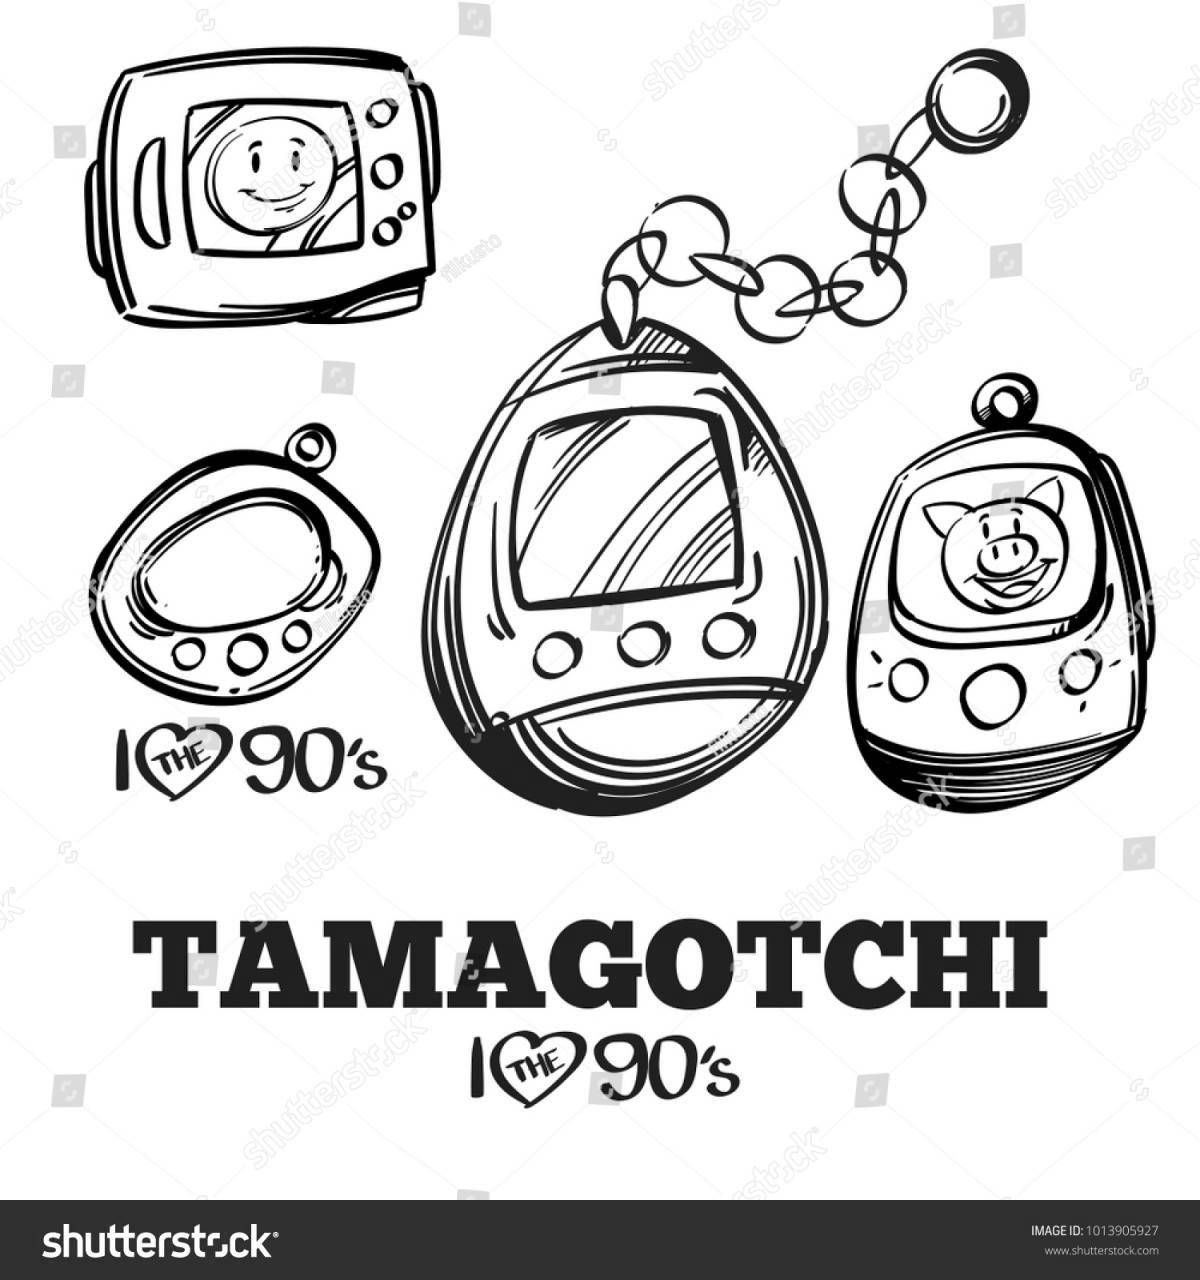 Great tamagotchi coloring book